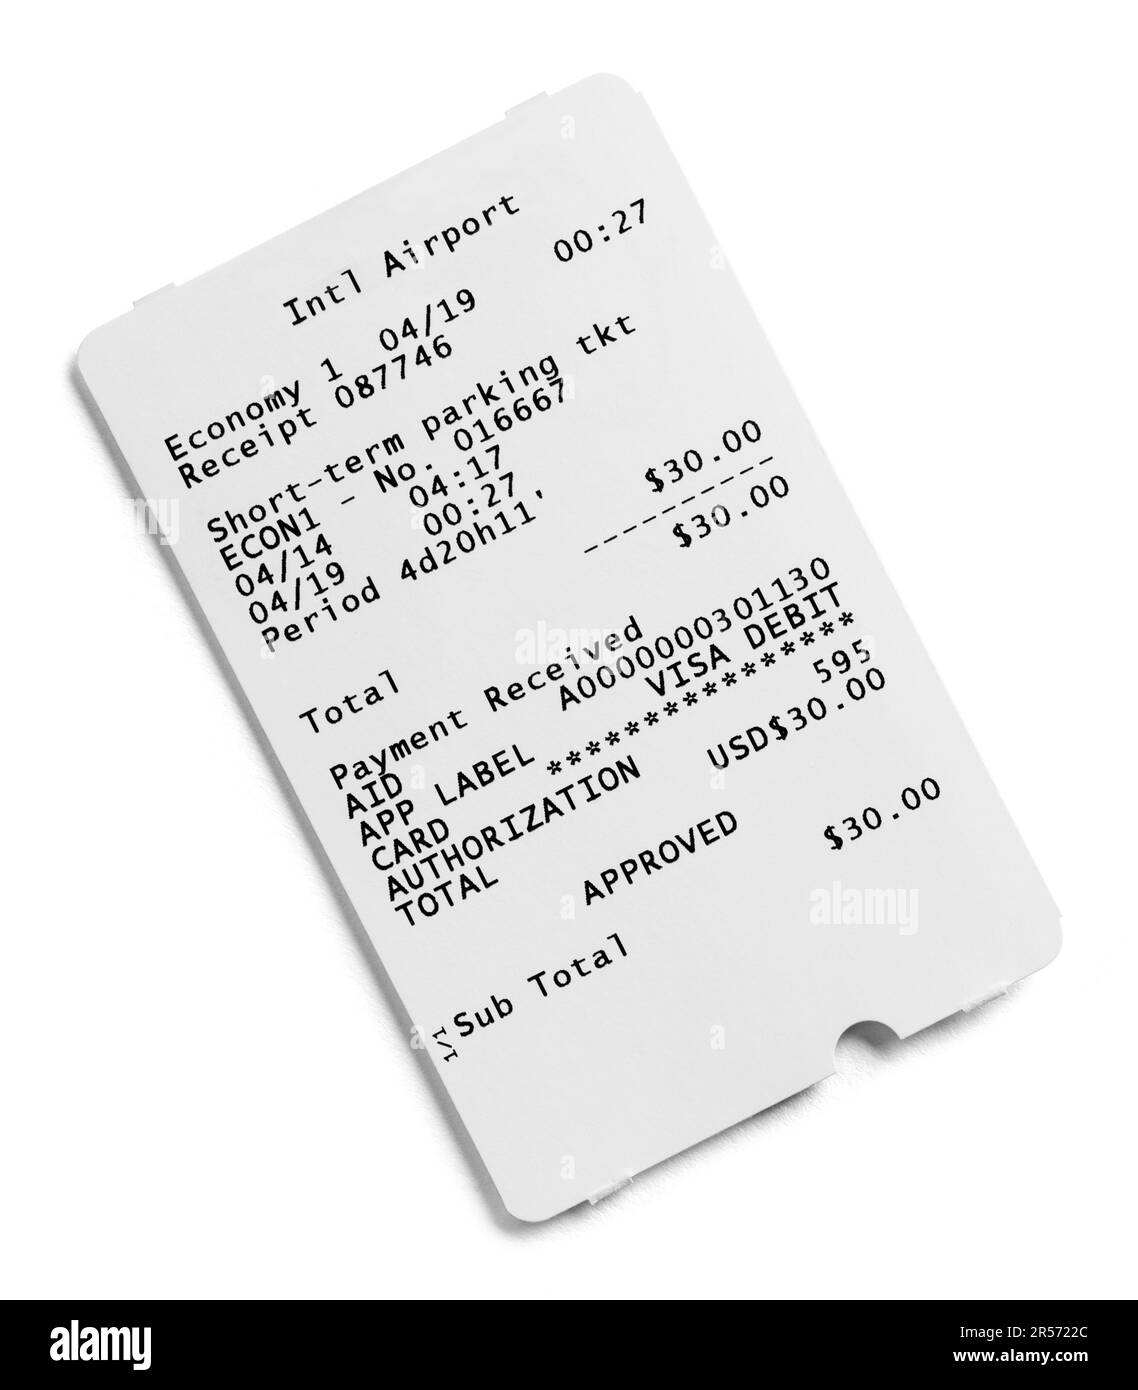 Ausgedruckter Beleg für Parkticket-Karte in Weiß. Stockfoto